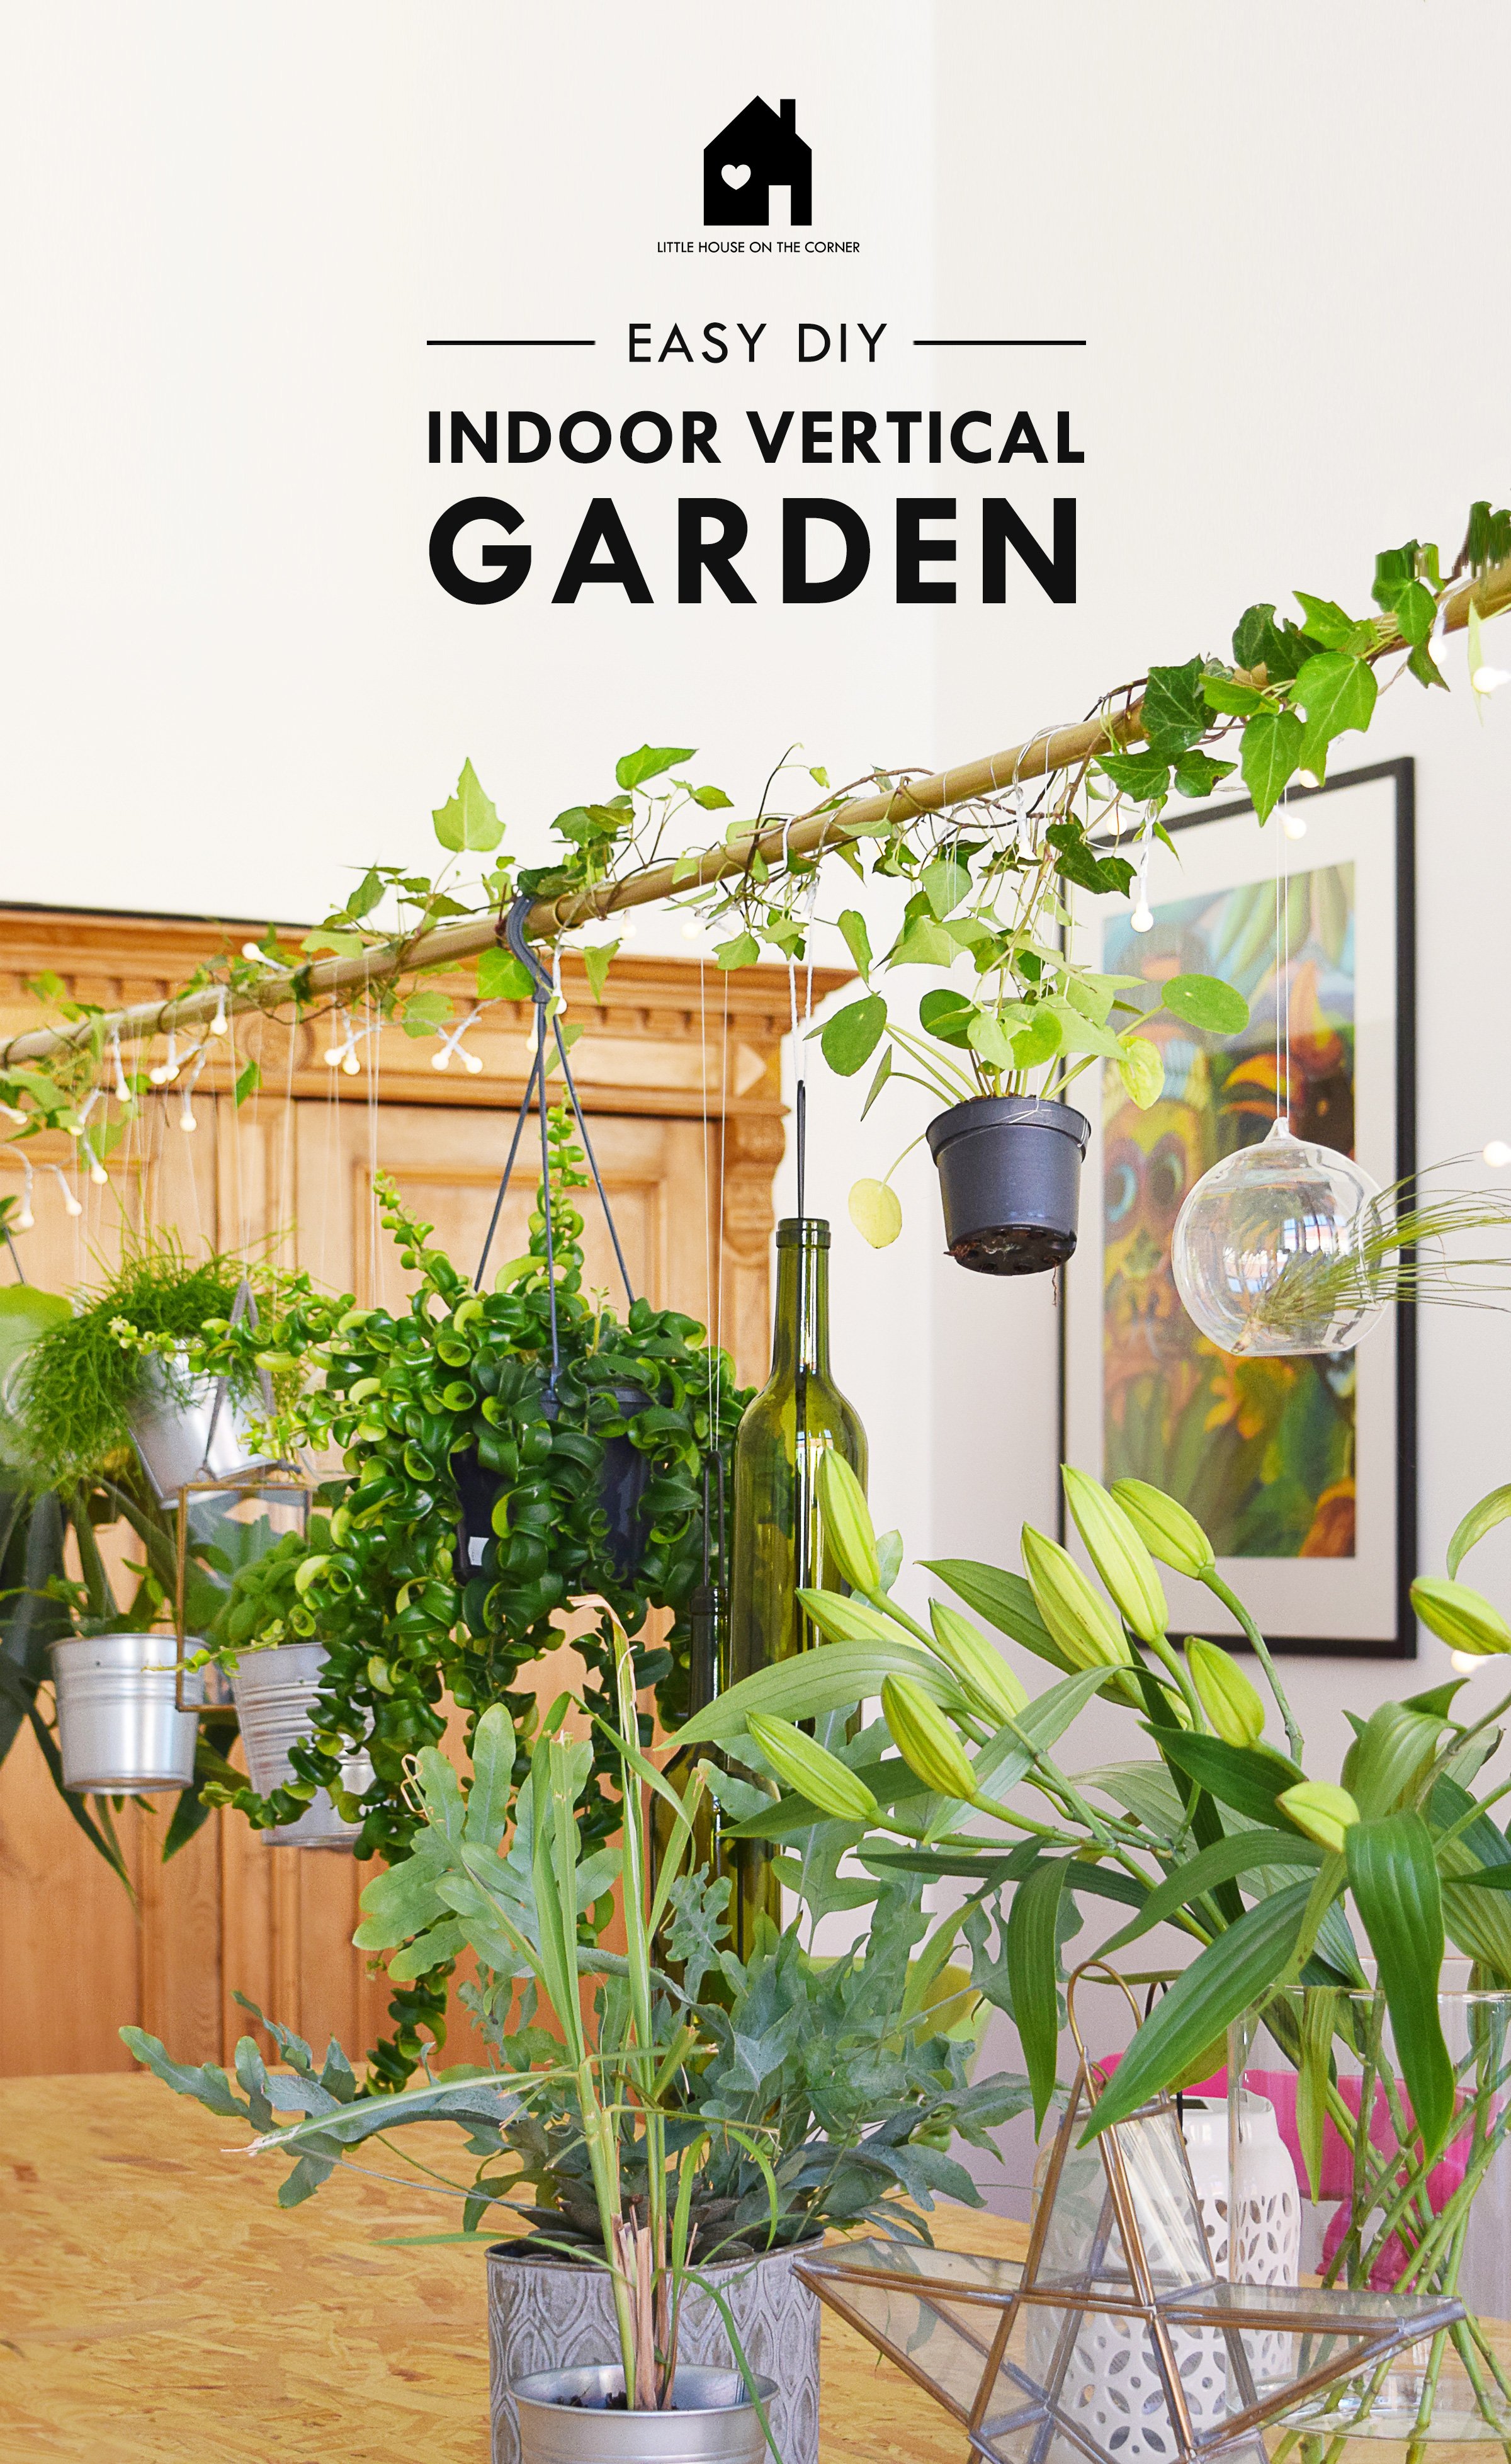 DIY Hanging Garden - Build Your Own Indoor Vertical Garden!